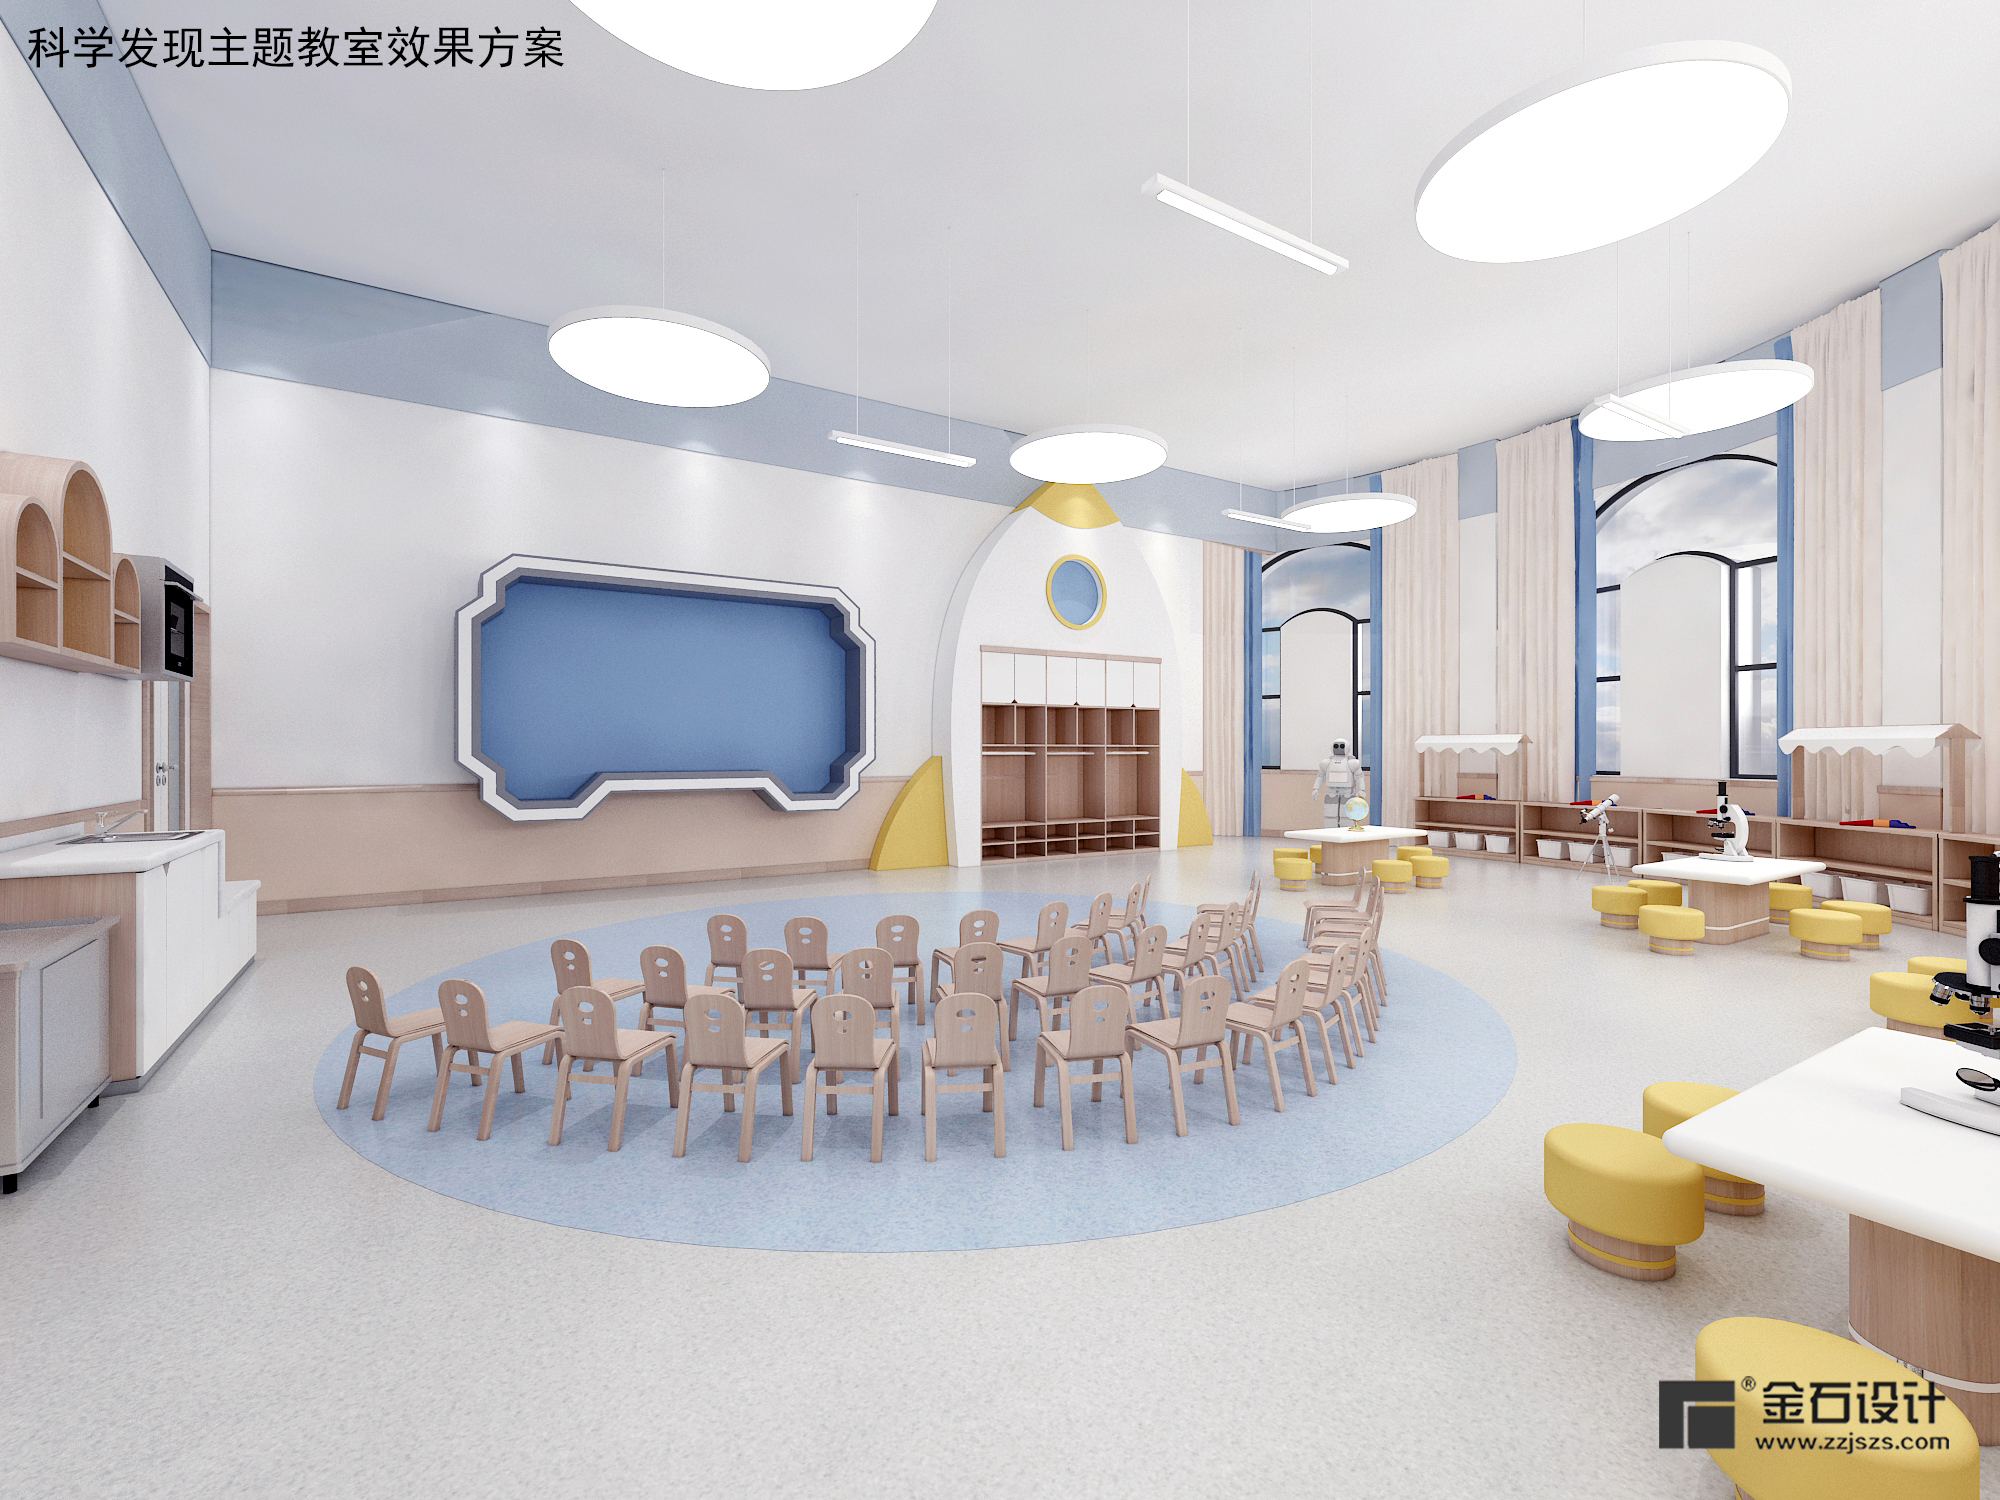 风格多变的幼儿园教室设计